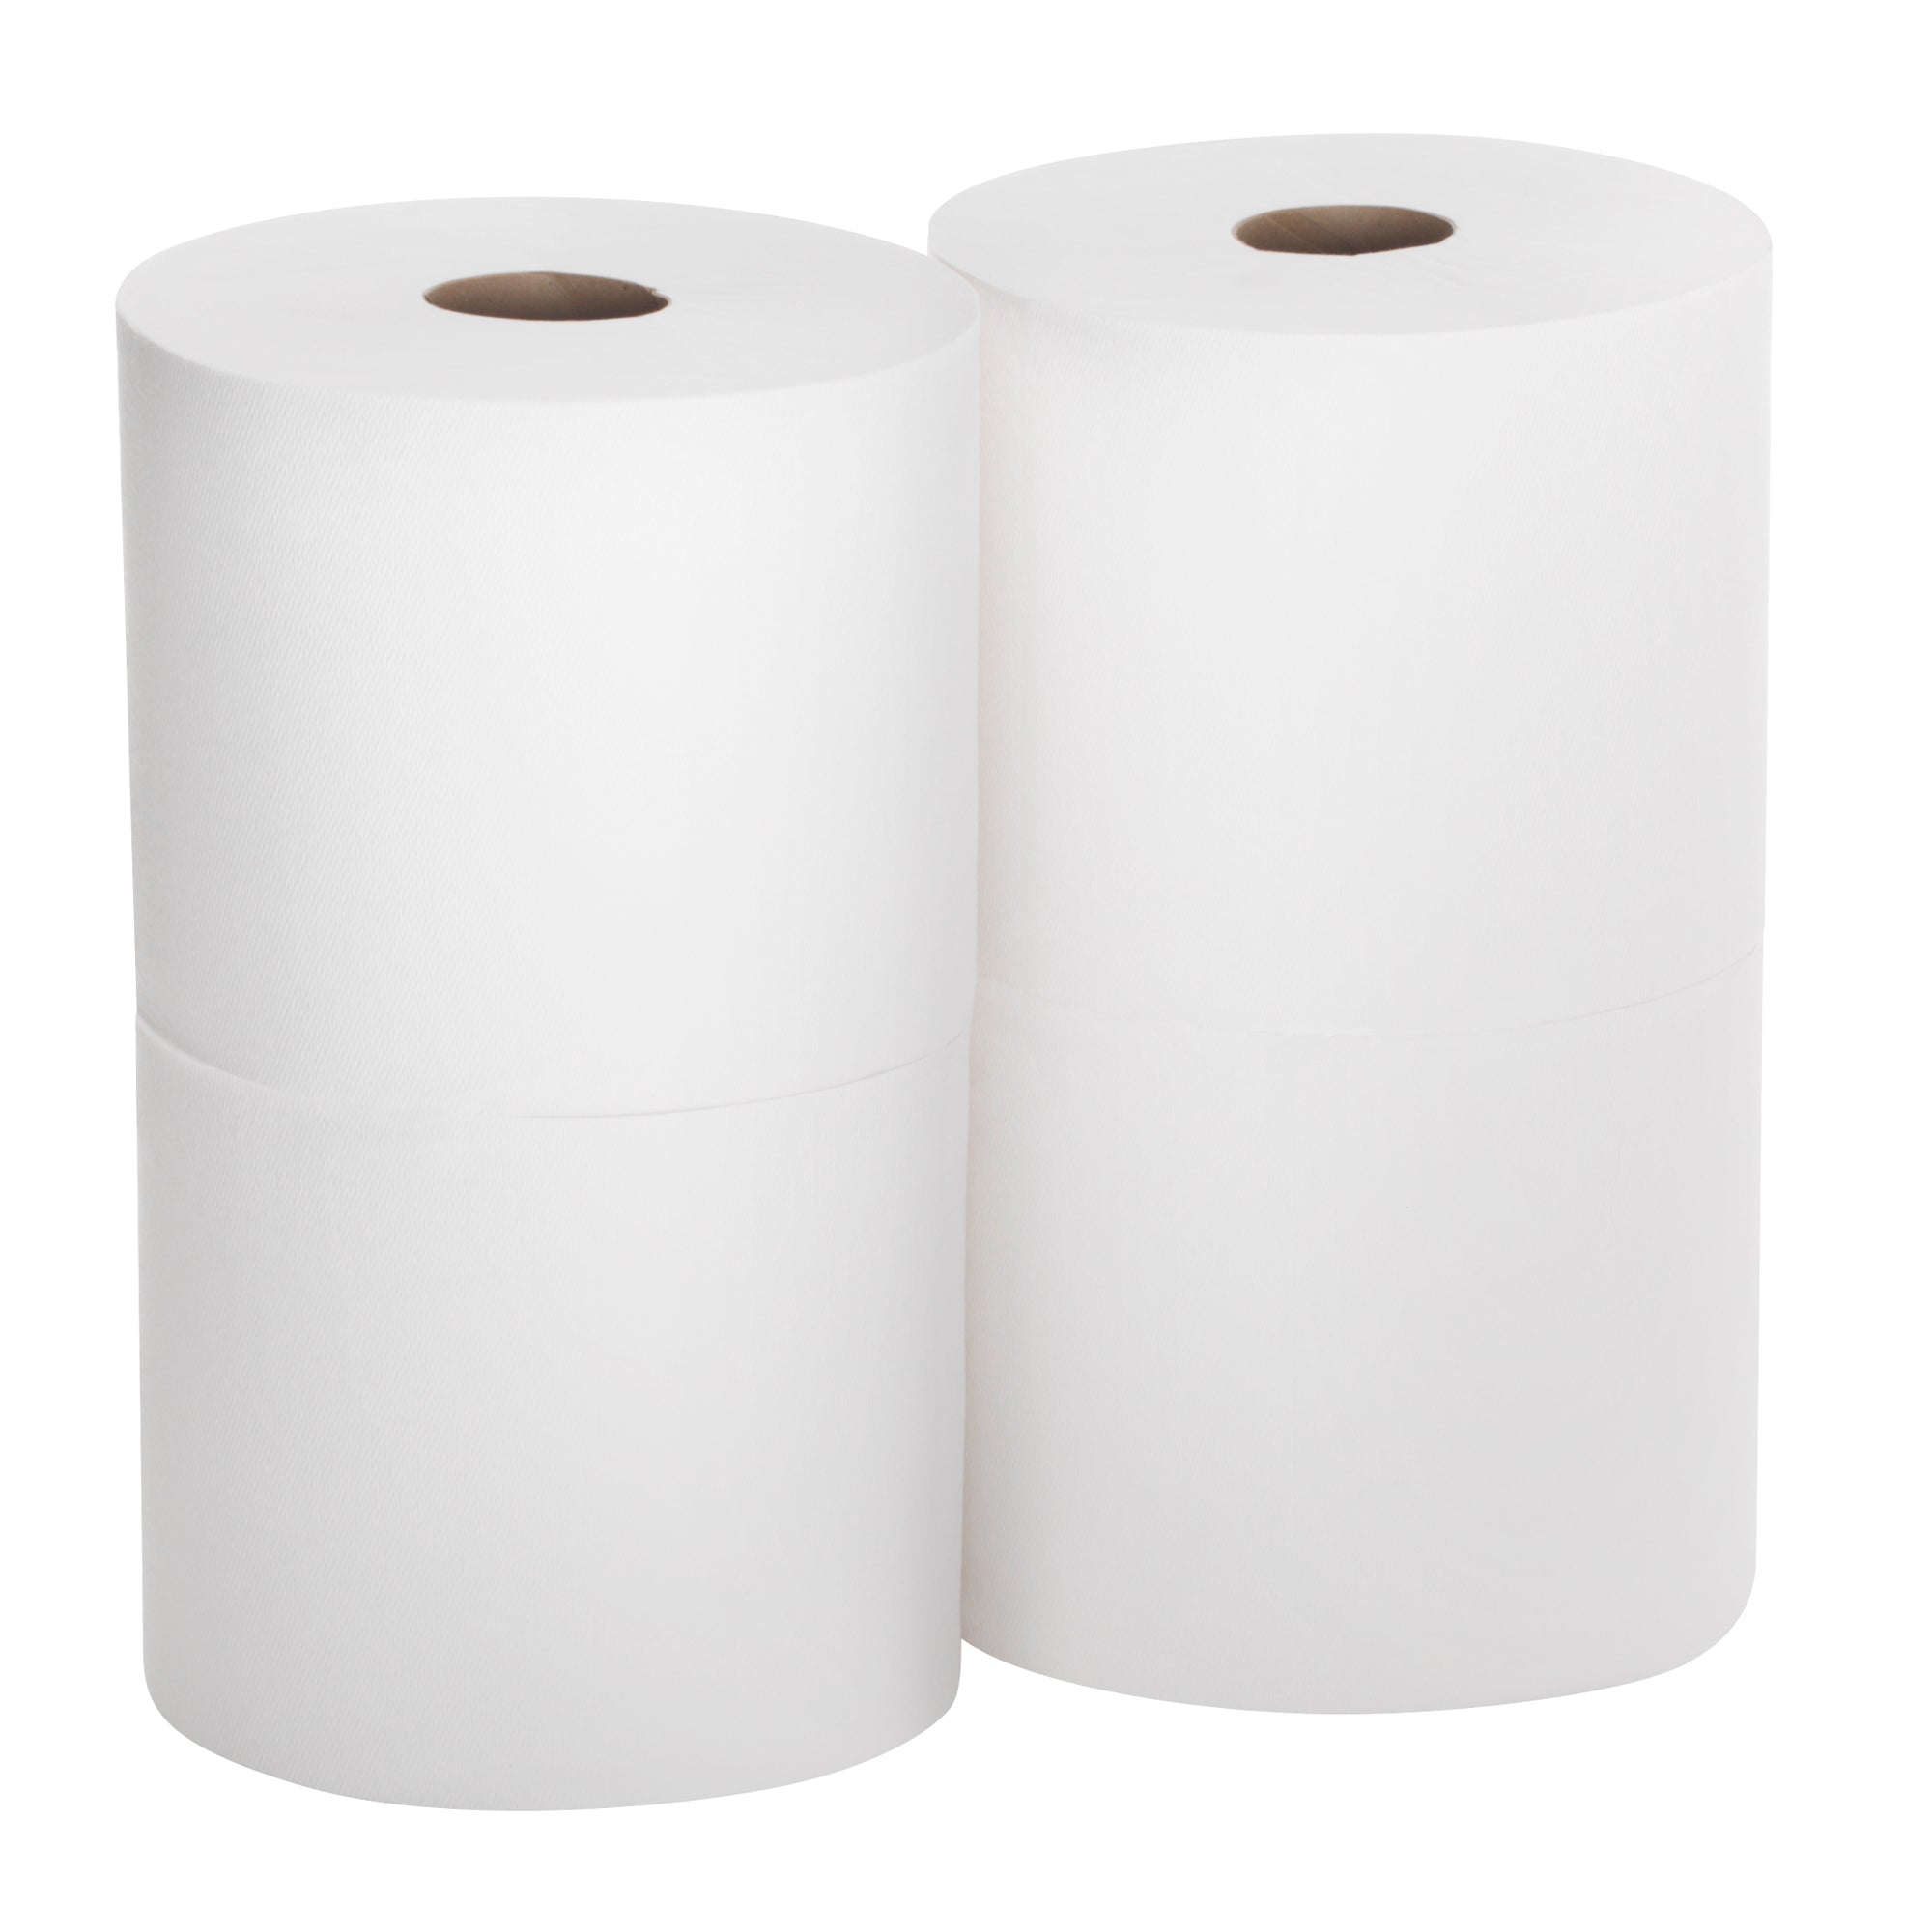 מגבות נייר SOFPULL® CENTERPULL בעלות קיבולת גבוהה מבית GP PRO (ג'ורג'יה פסיפיק), לבן, (4 גלילים של 213.15 מטרים סהכ 852.59 מטרים) 2,240 גליונות למארז